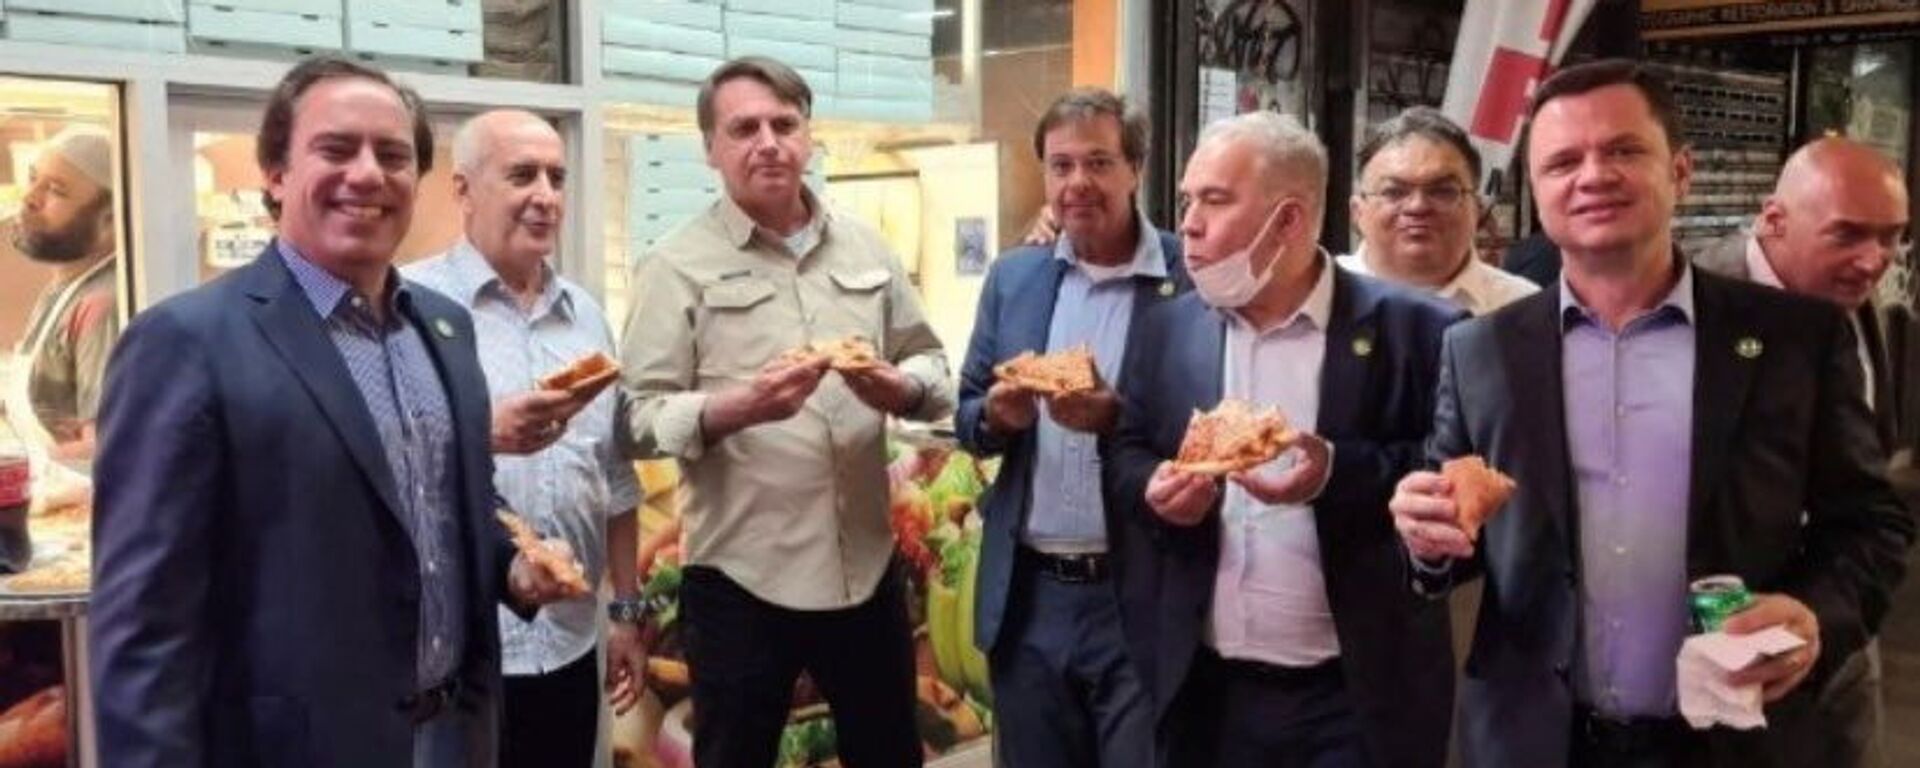 Tổng thống Brazil Jair Bolsonaro ăn pizza với các quan chức chính phủ trên một con phố trước Đại hội đồng LHQ  ở New York, Hoa Kỳ, ngày 19/9/2021 - Sputnik Việt Nam, 1920, 21.09.2021